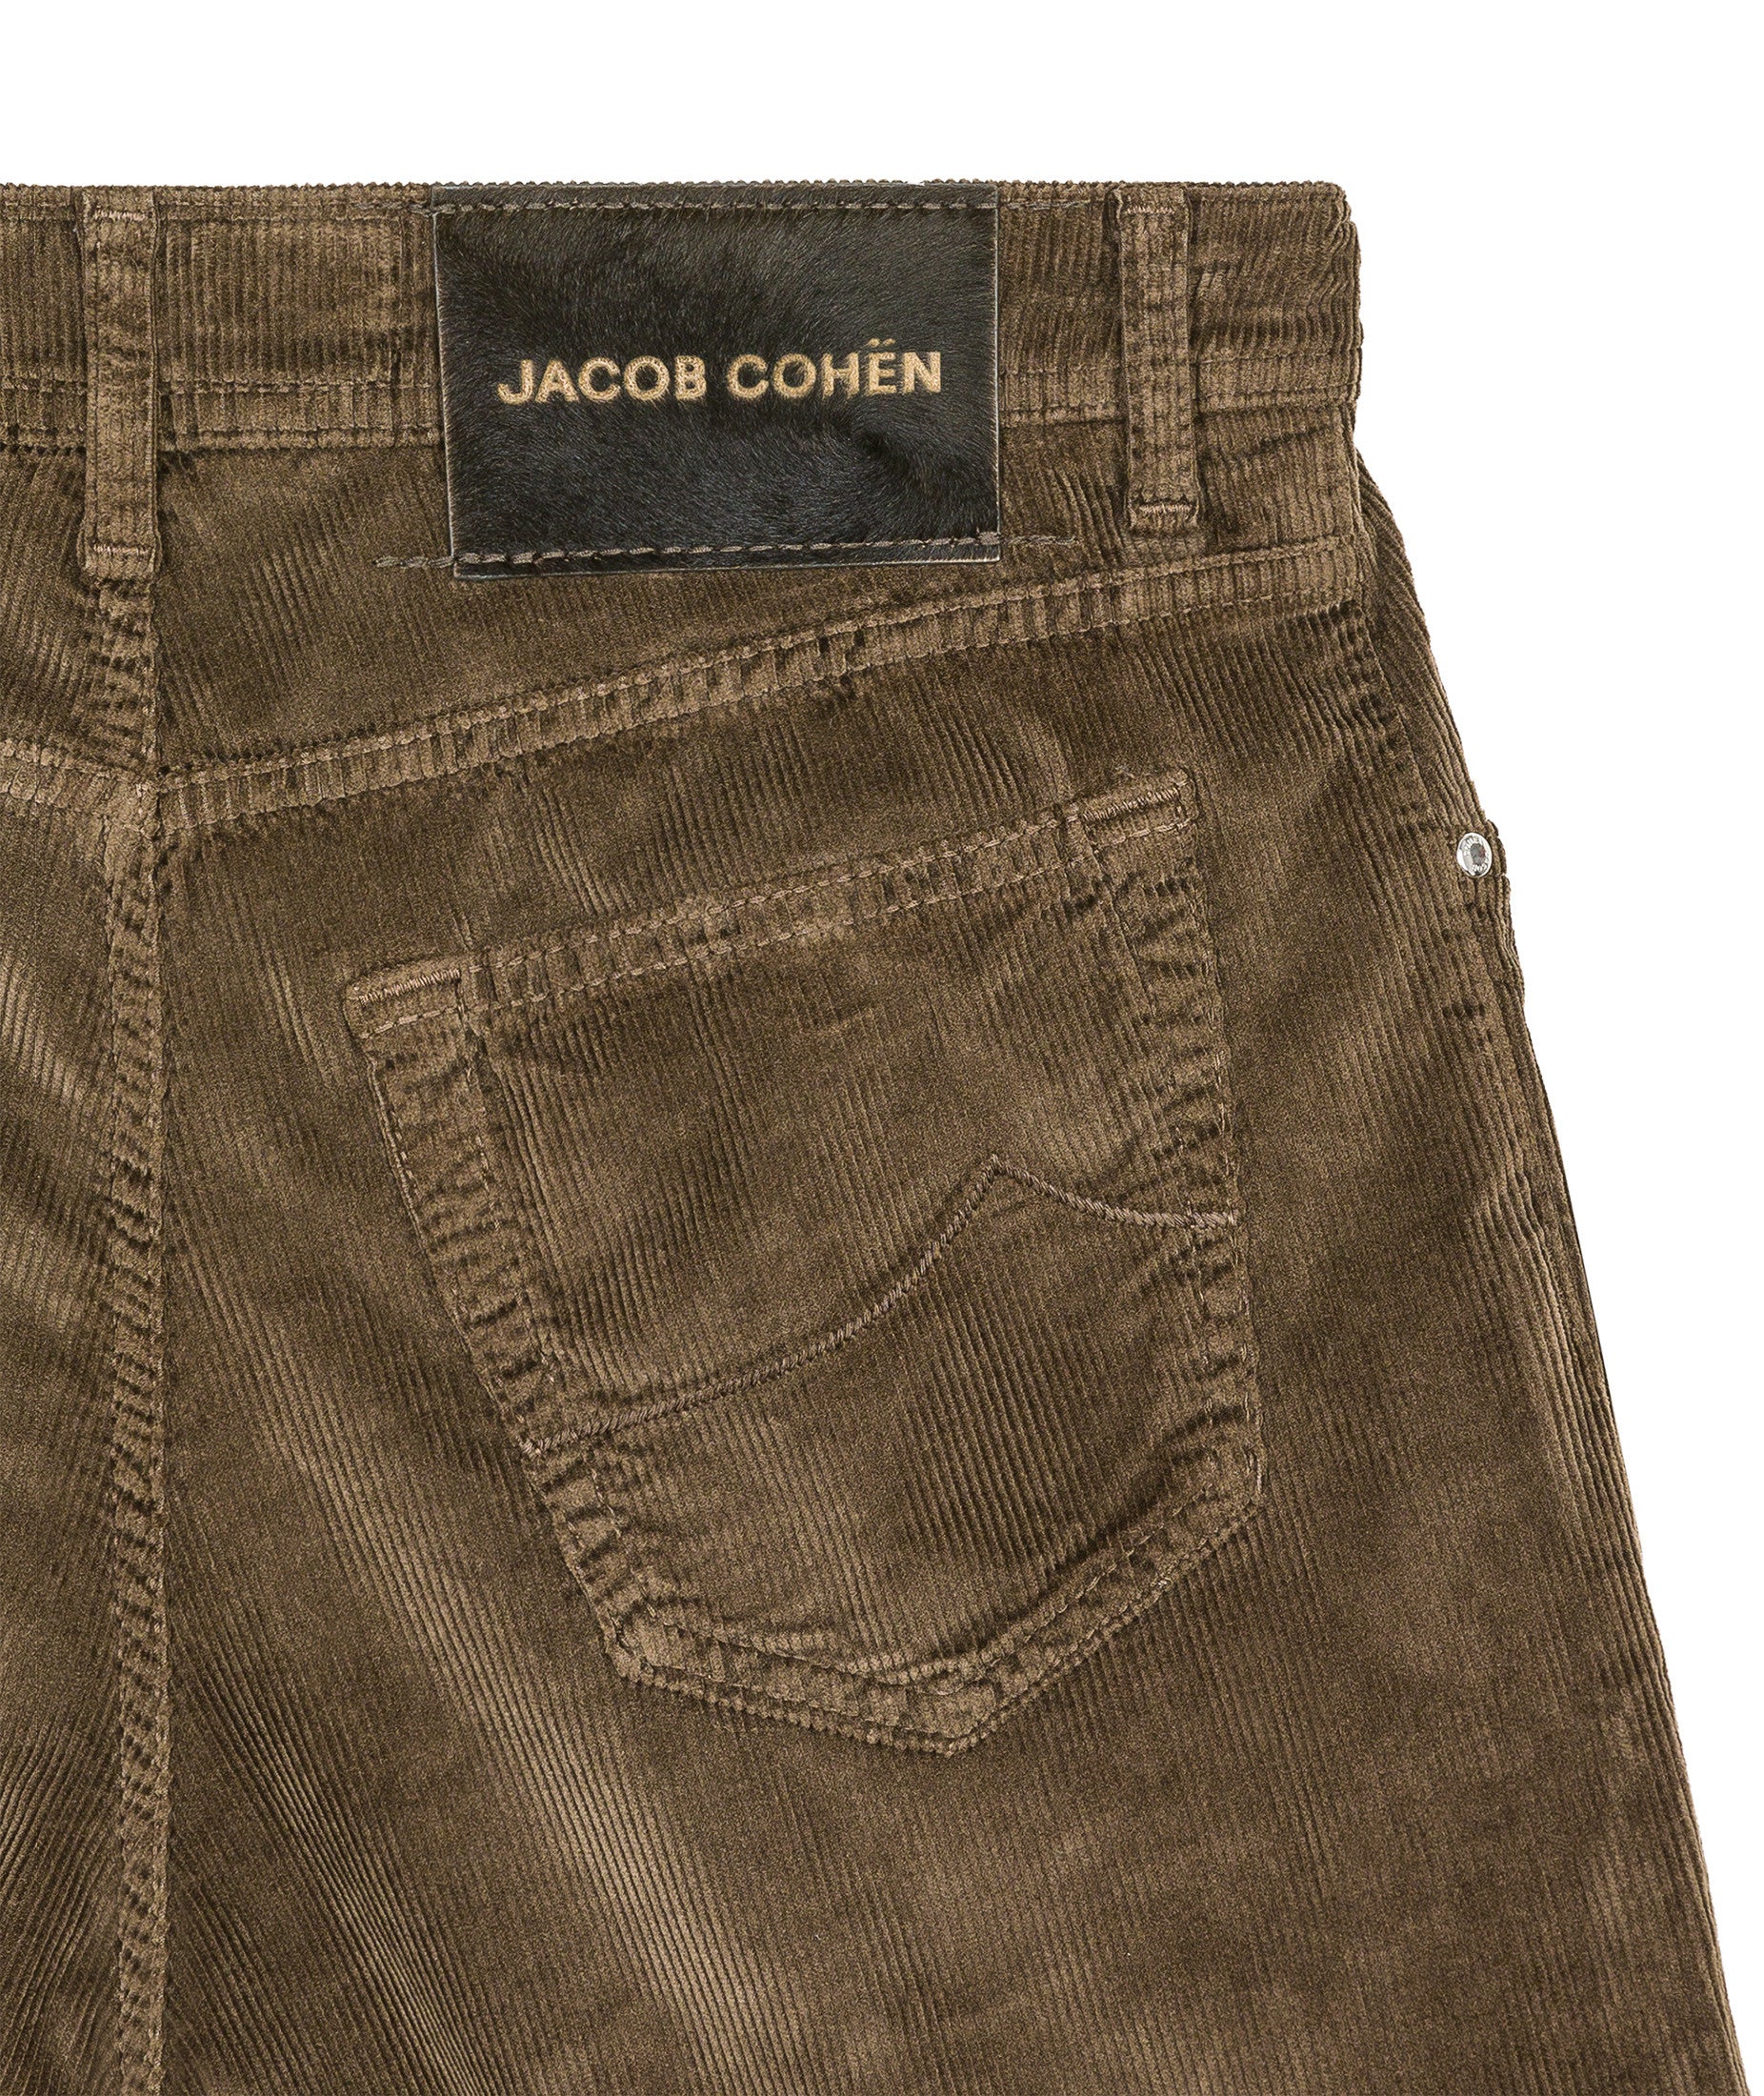 Jacob Cohen BARD brown corduroy